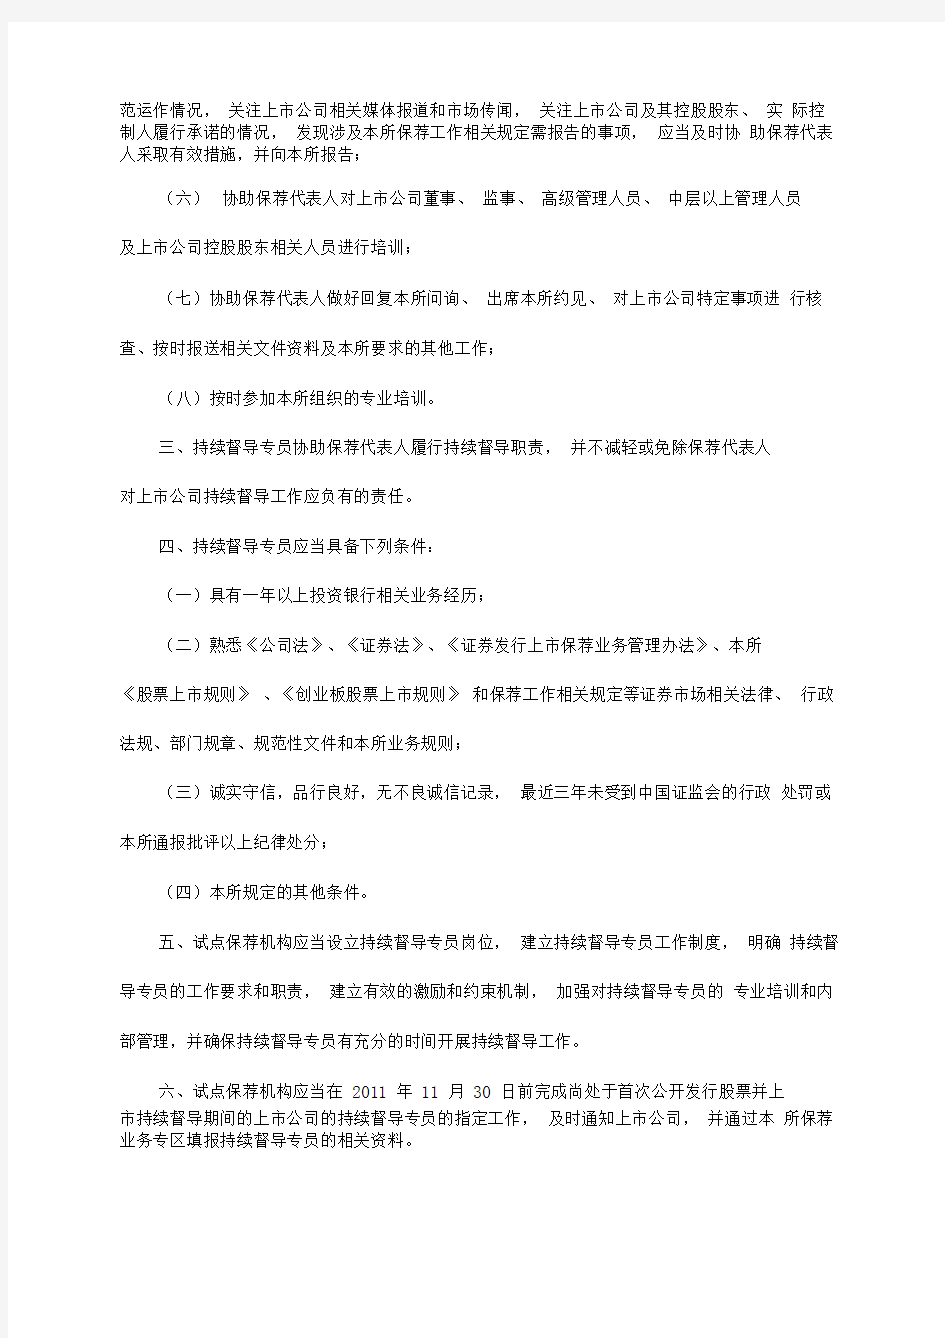 深圳证券交易所关于在部分保荐机构试行持续督导专员制度的通知